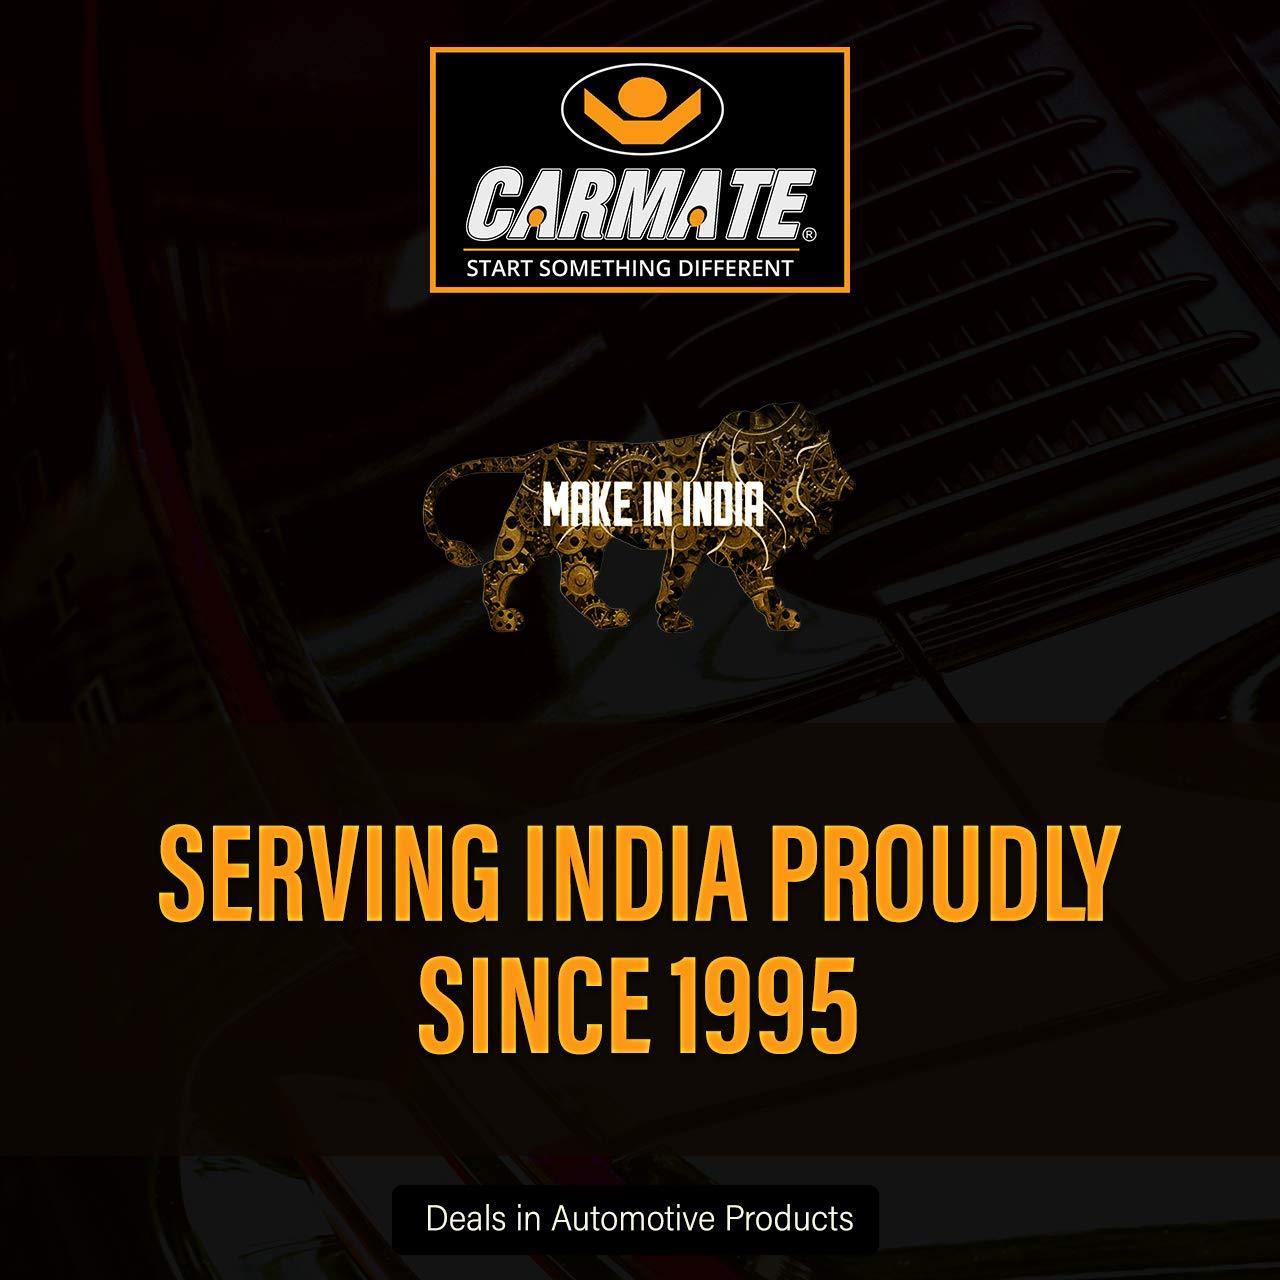 Carmate Pearl Custom Fitting Waterproof Car Body Cover Grey For   Mahindra - Bolero XL - CARMATE®